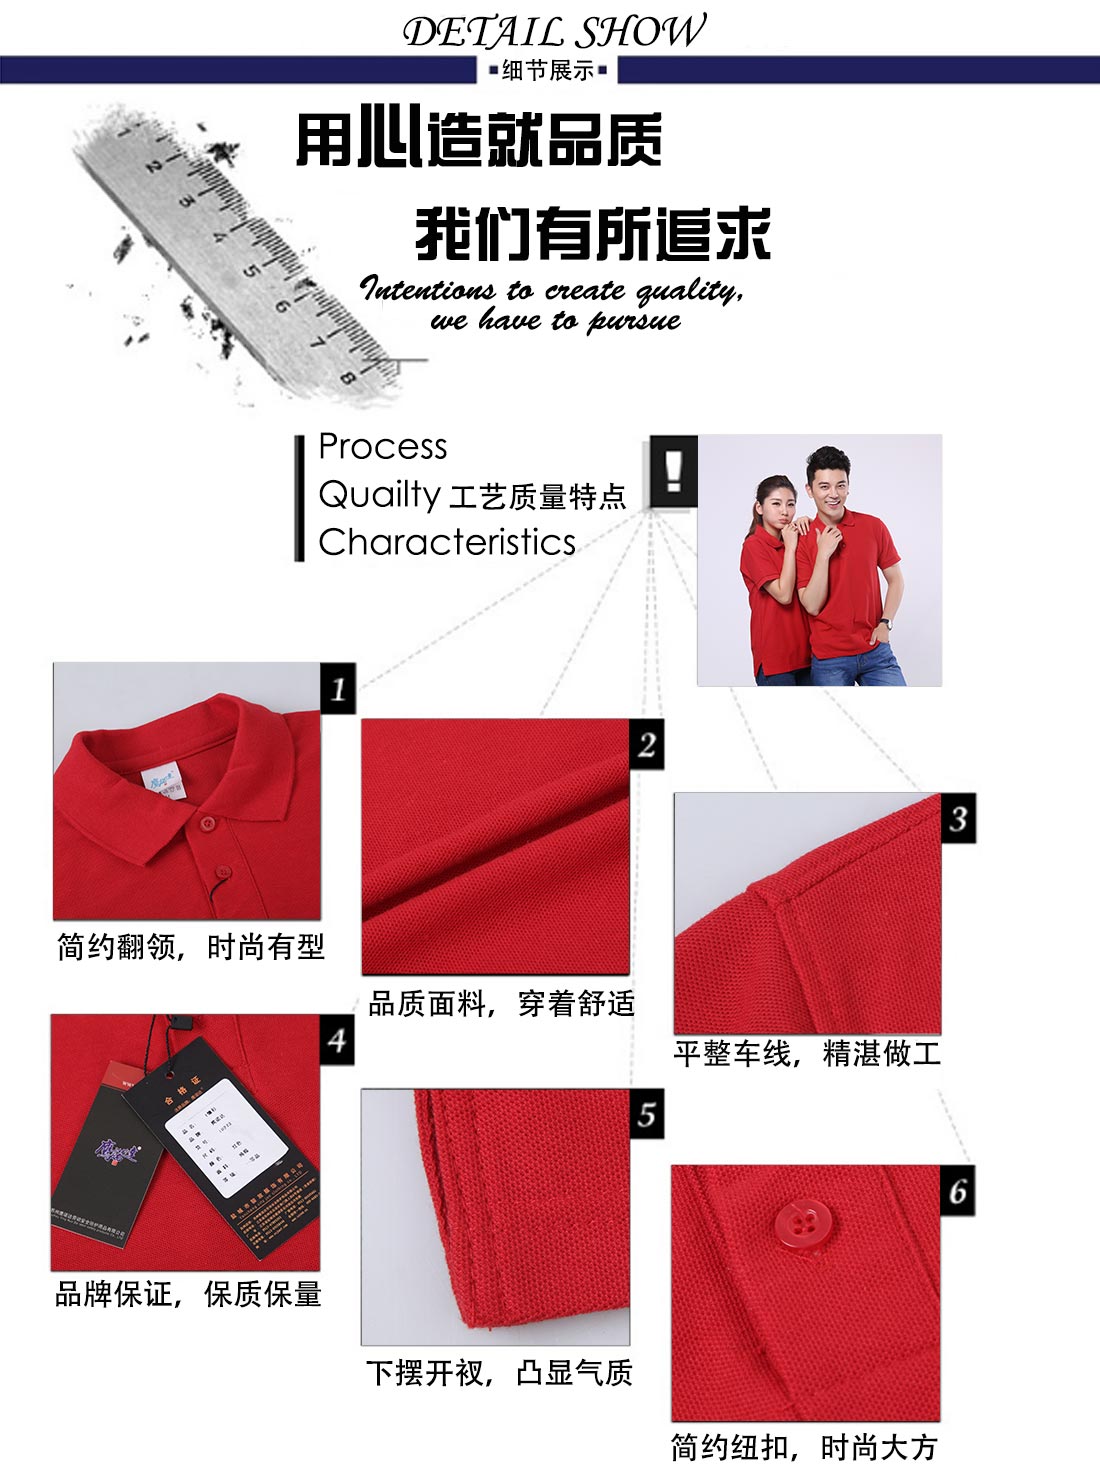 短袖修身T恤工作服 大红色夏季潮流t恤衫工作服细节展示 